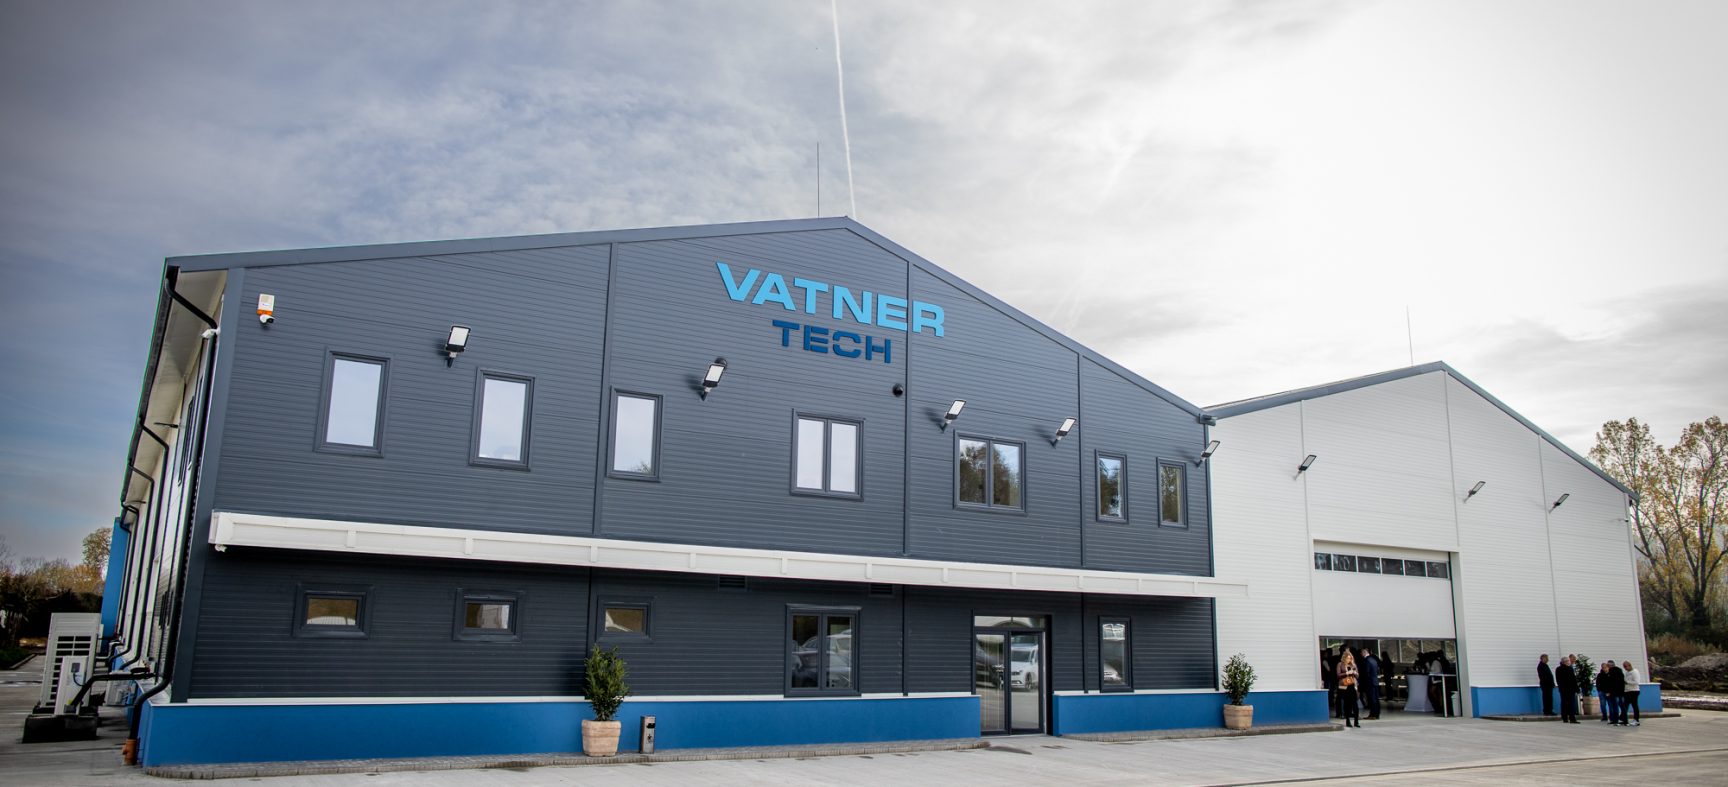 Vatner Tech